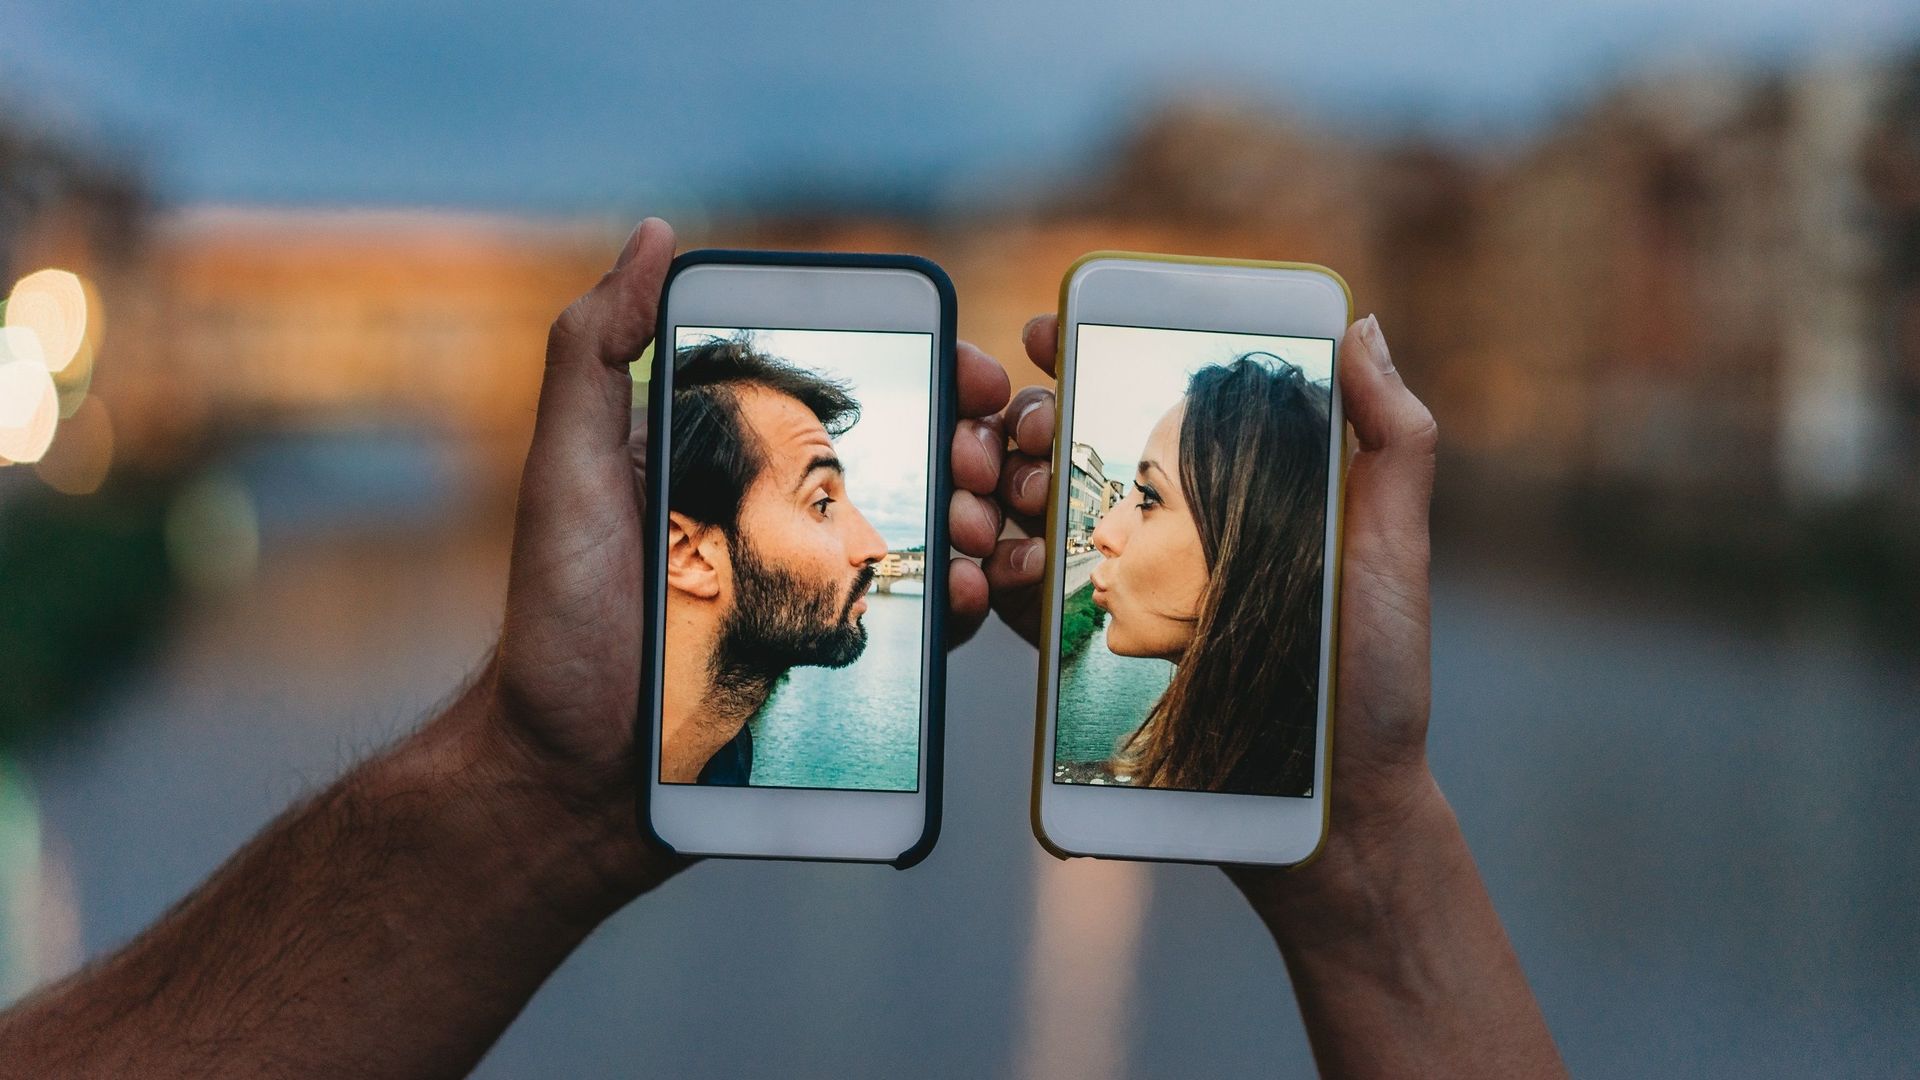 Les rencontres amoureuses en vidéo ont séduit les Millennials pendant les deux confinements.